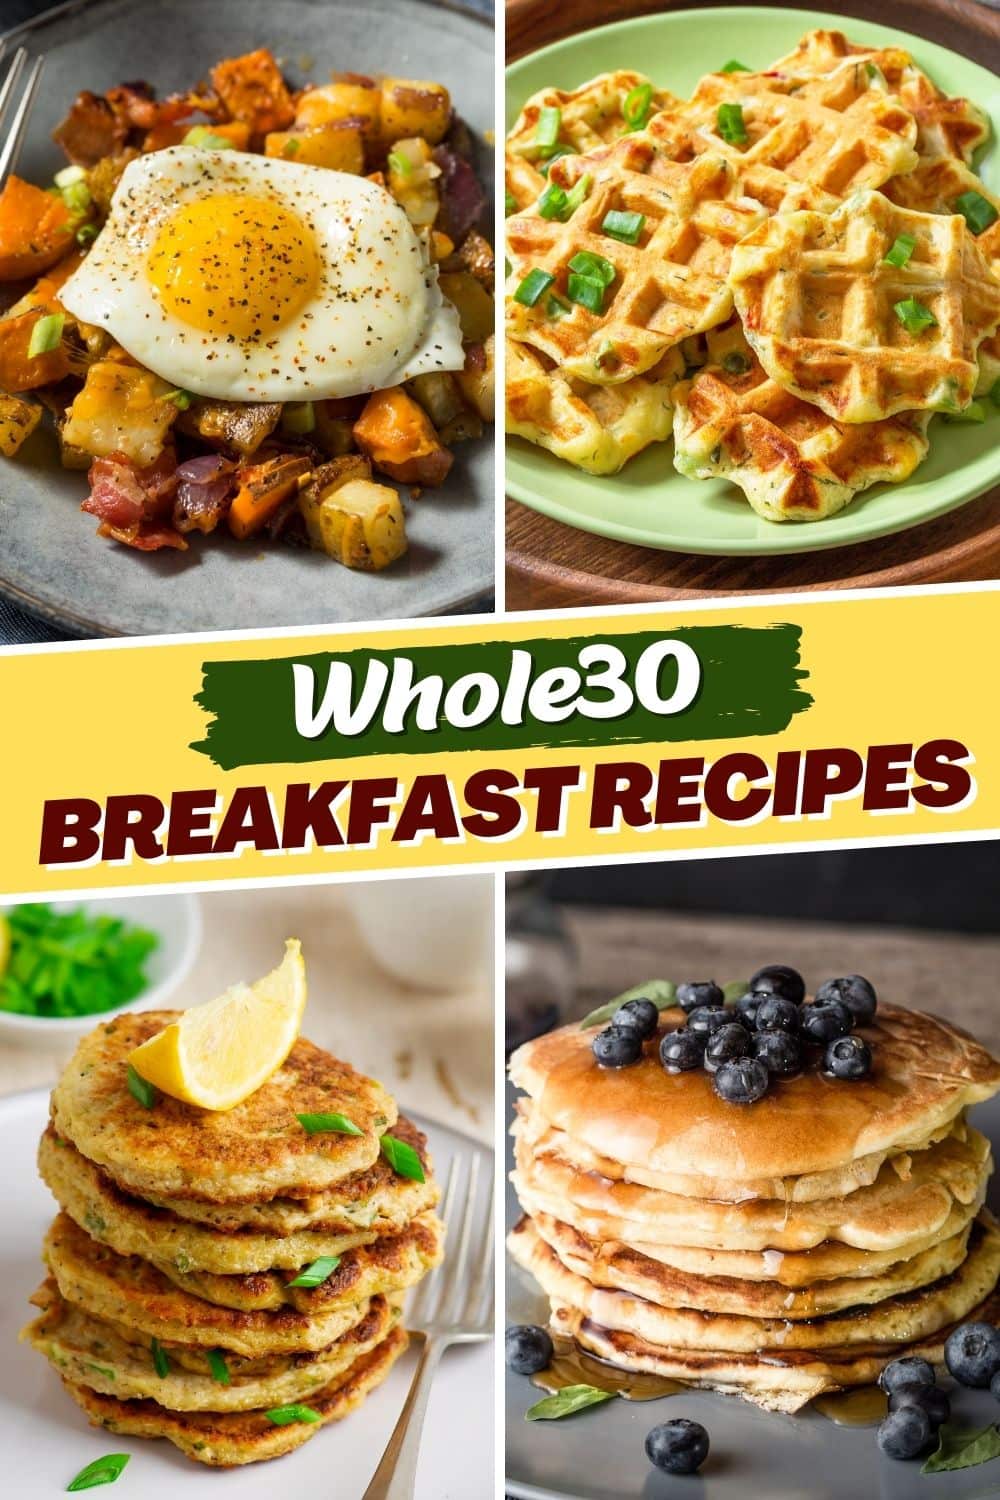 25 Whole30 Breakfast Recipes - Insanely Good